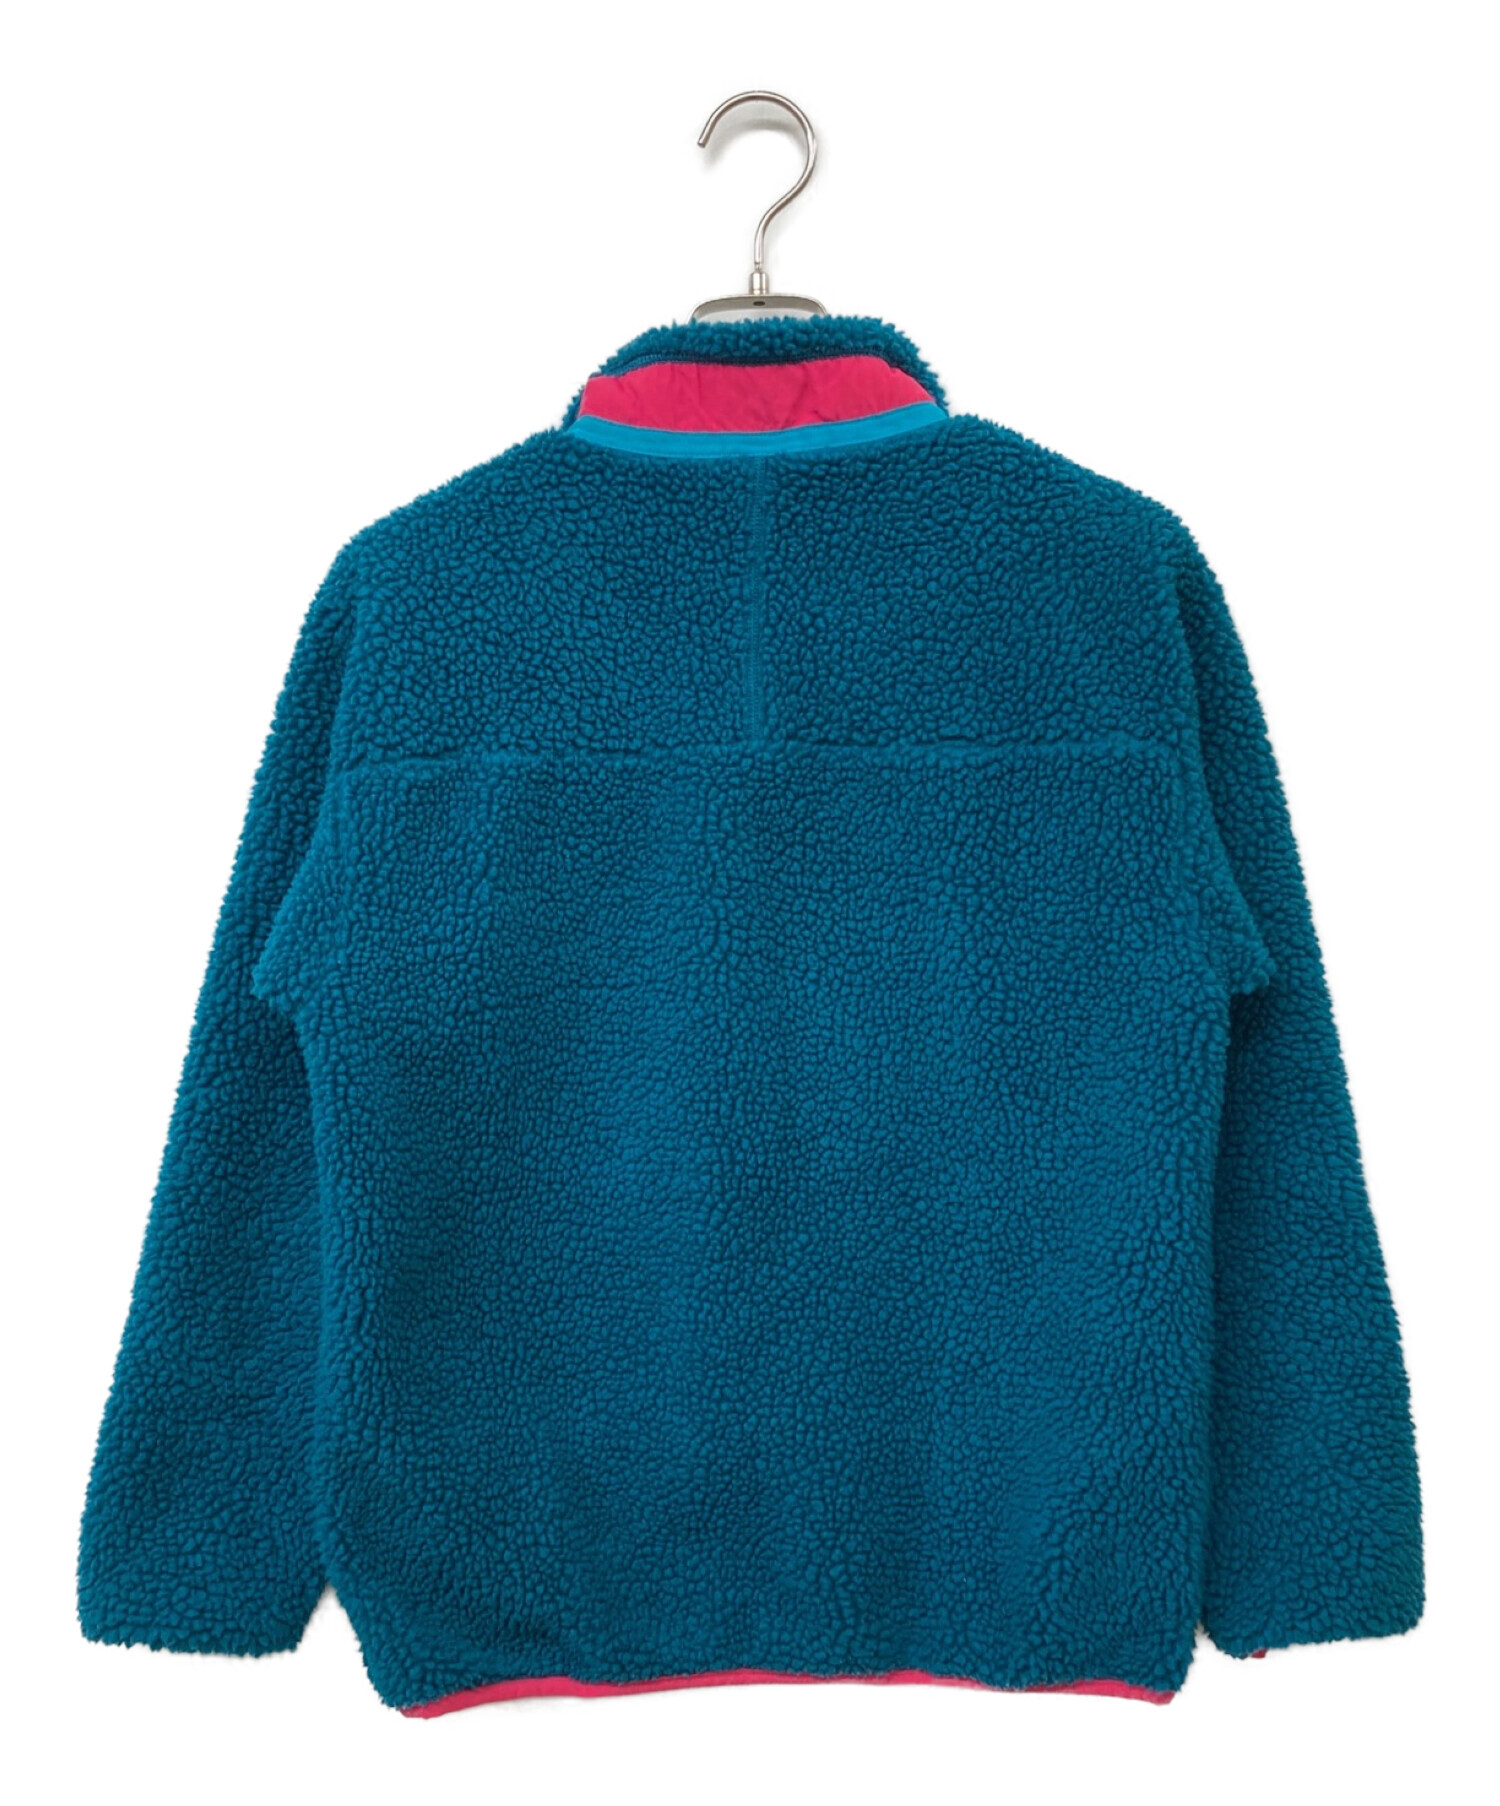 Patagonia (パタゴニア) キッズ規格 クラシックレトロXジャケット ブルー サイズ: KIDS XL